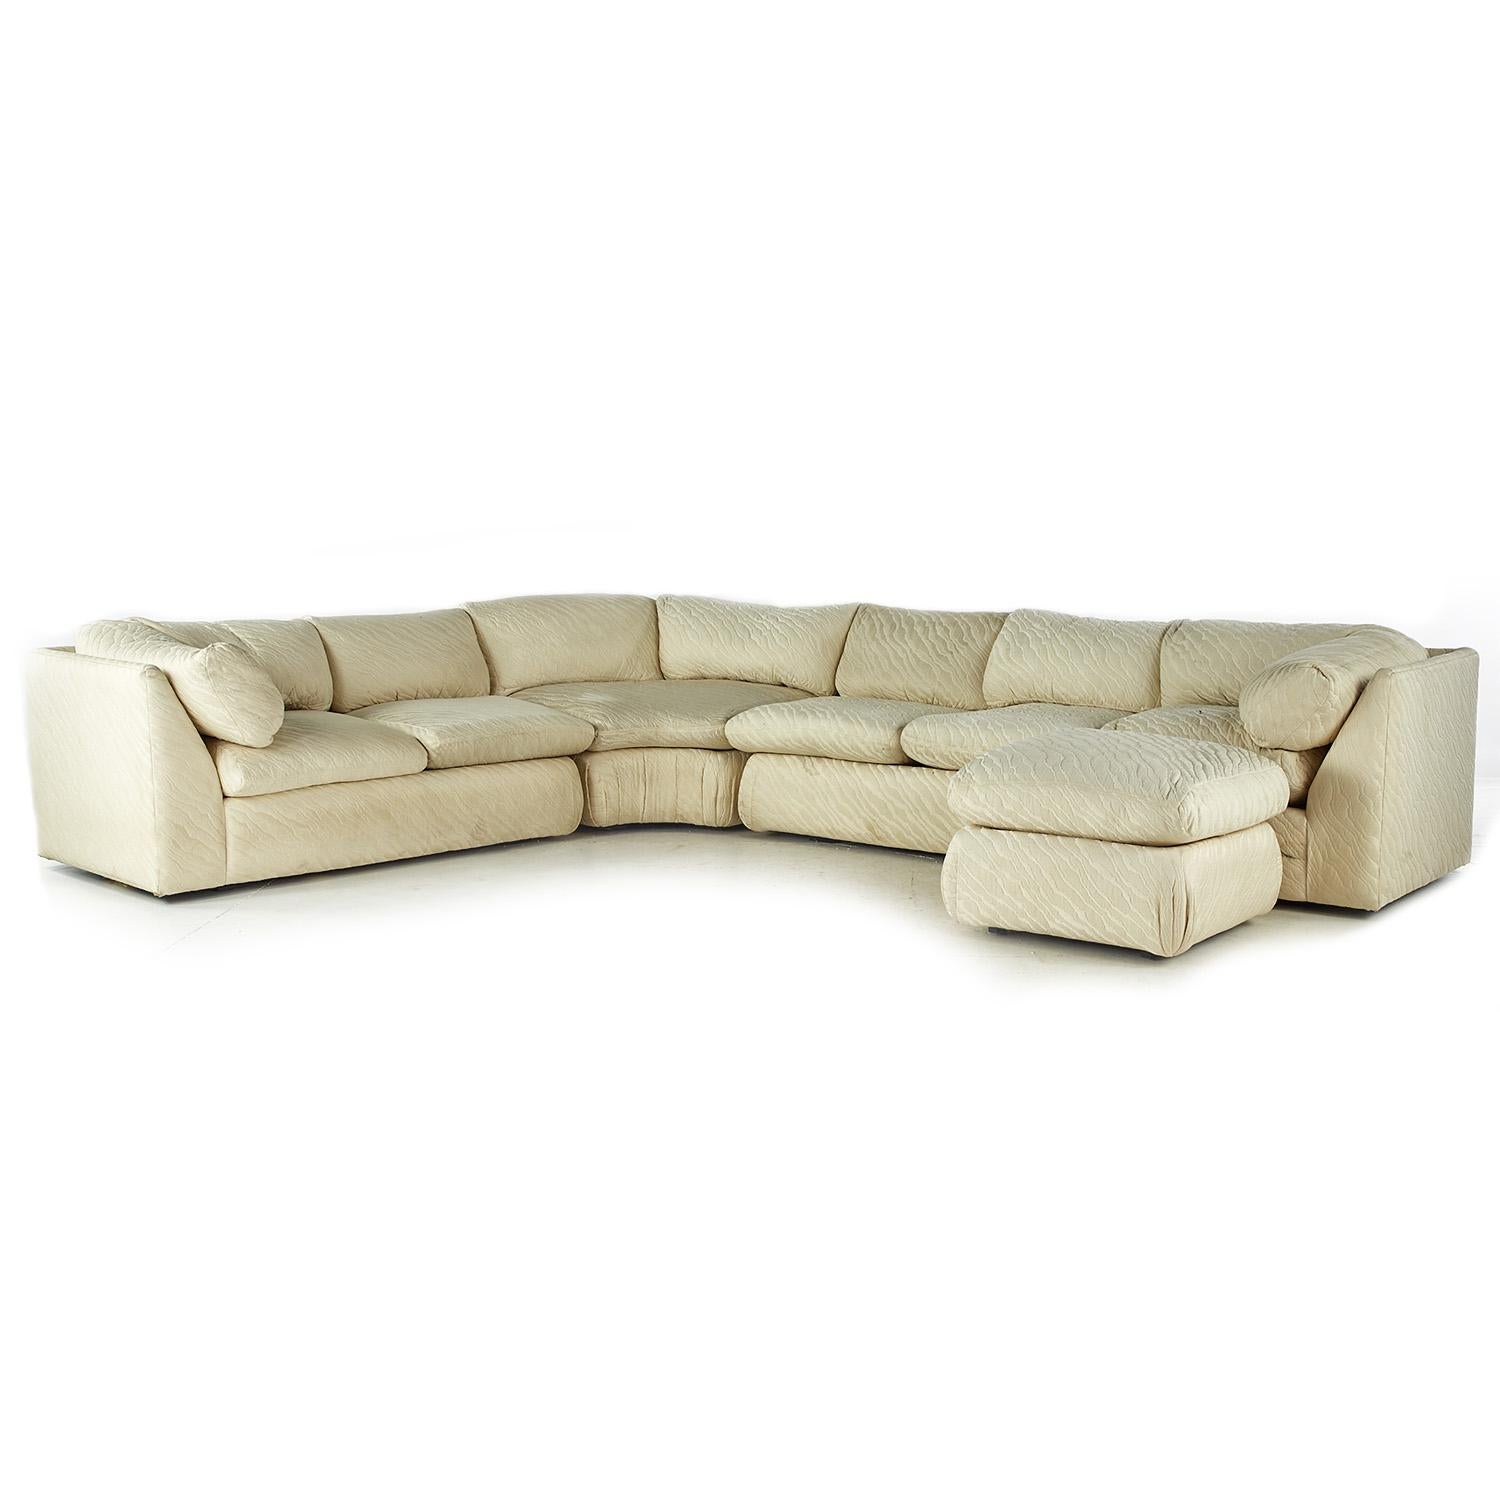 Thayer Coggin Sektionssofa aus der Mitte des Jahrhunderts

Dieses Sofa misst: 103 breit x 127 tief x 28,5 Zoll hoch, mit einer Sitzhöhe von 17,5 und Armhöhe von 28,5 Zoll

Alle Möbelstücke sind in einem so genannten restaurierten Vintage-Zustand